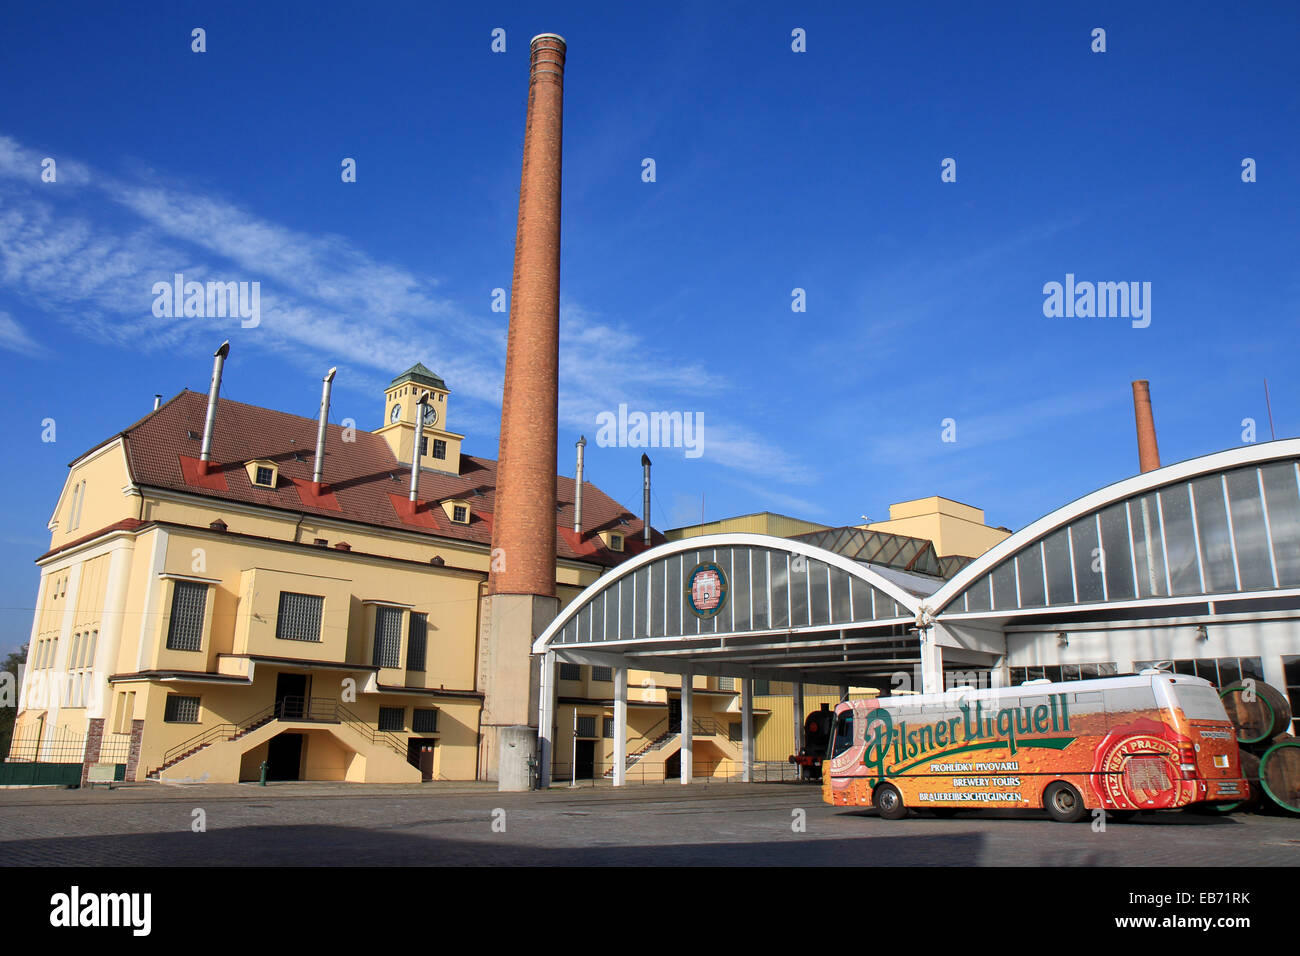 Tschechische Republik: Main Gebäude der Pilsner Urquell Brauerei Pilsen. Foto vom 8. November 2014 Stockfoto